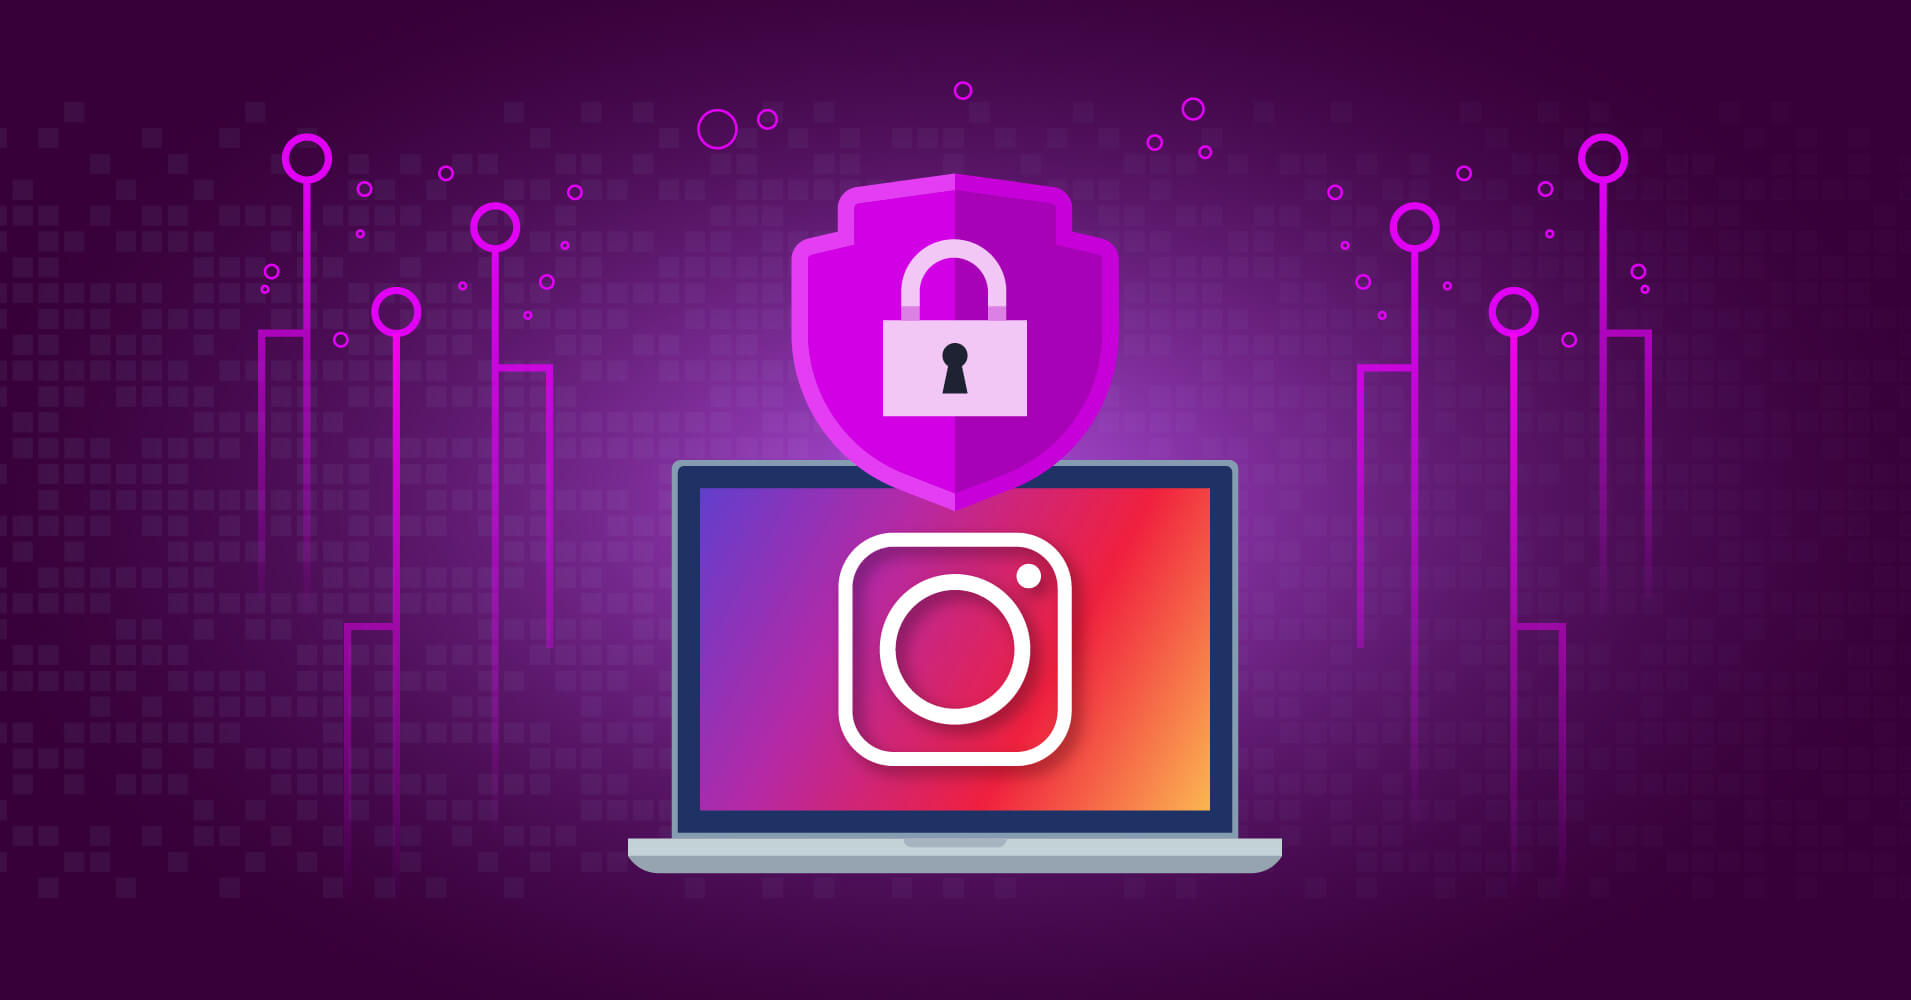 How to generate Instagram access token